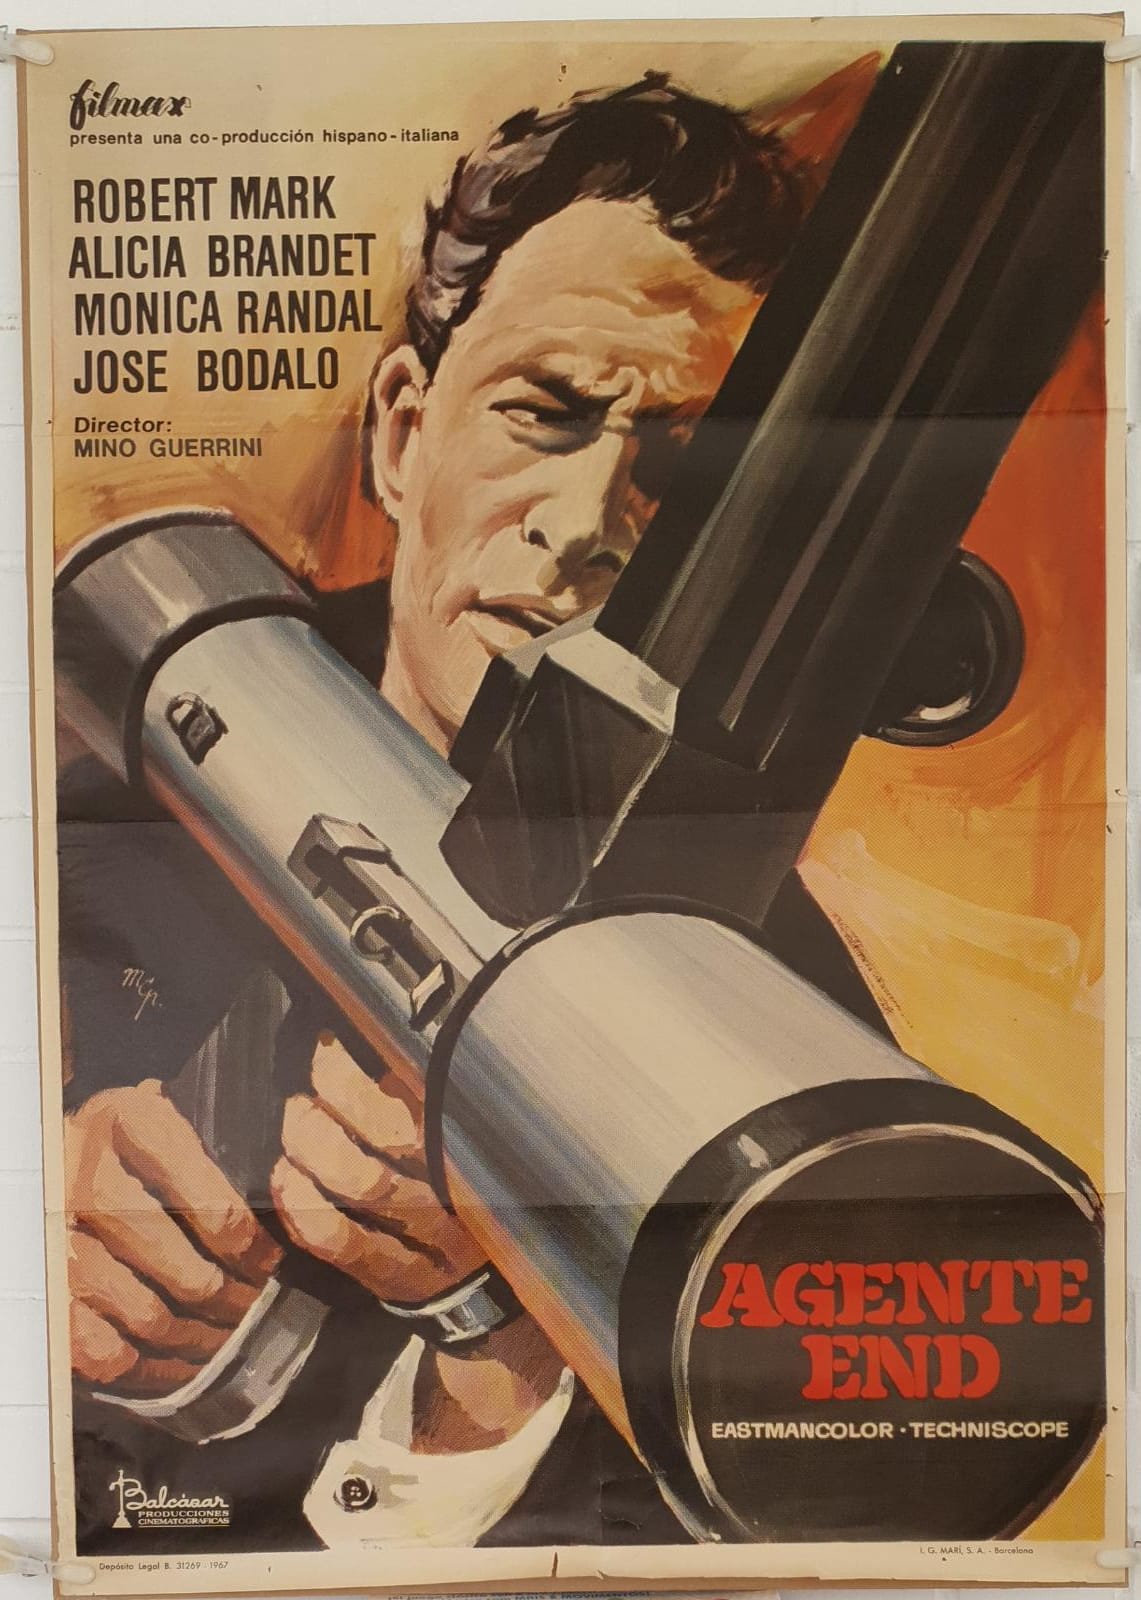 Agente End. Cartel (100x70) de Estreno. Año 1967